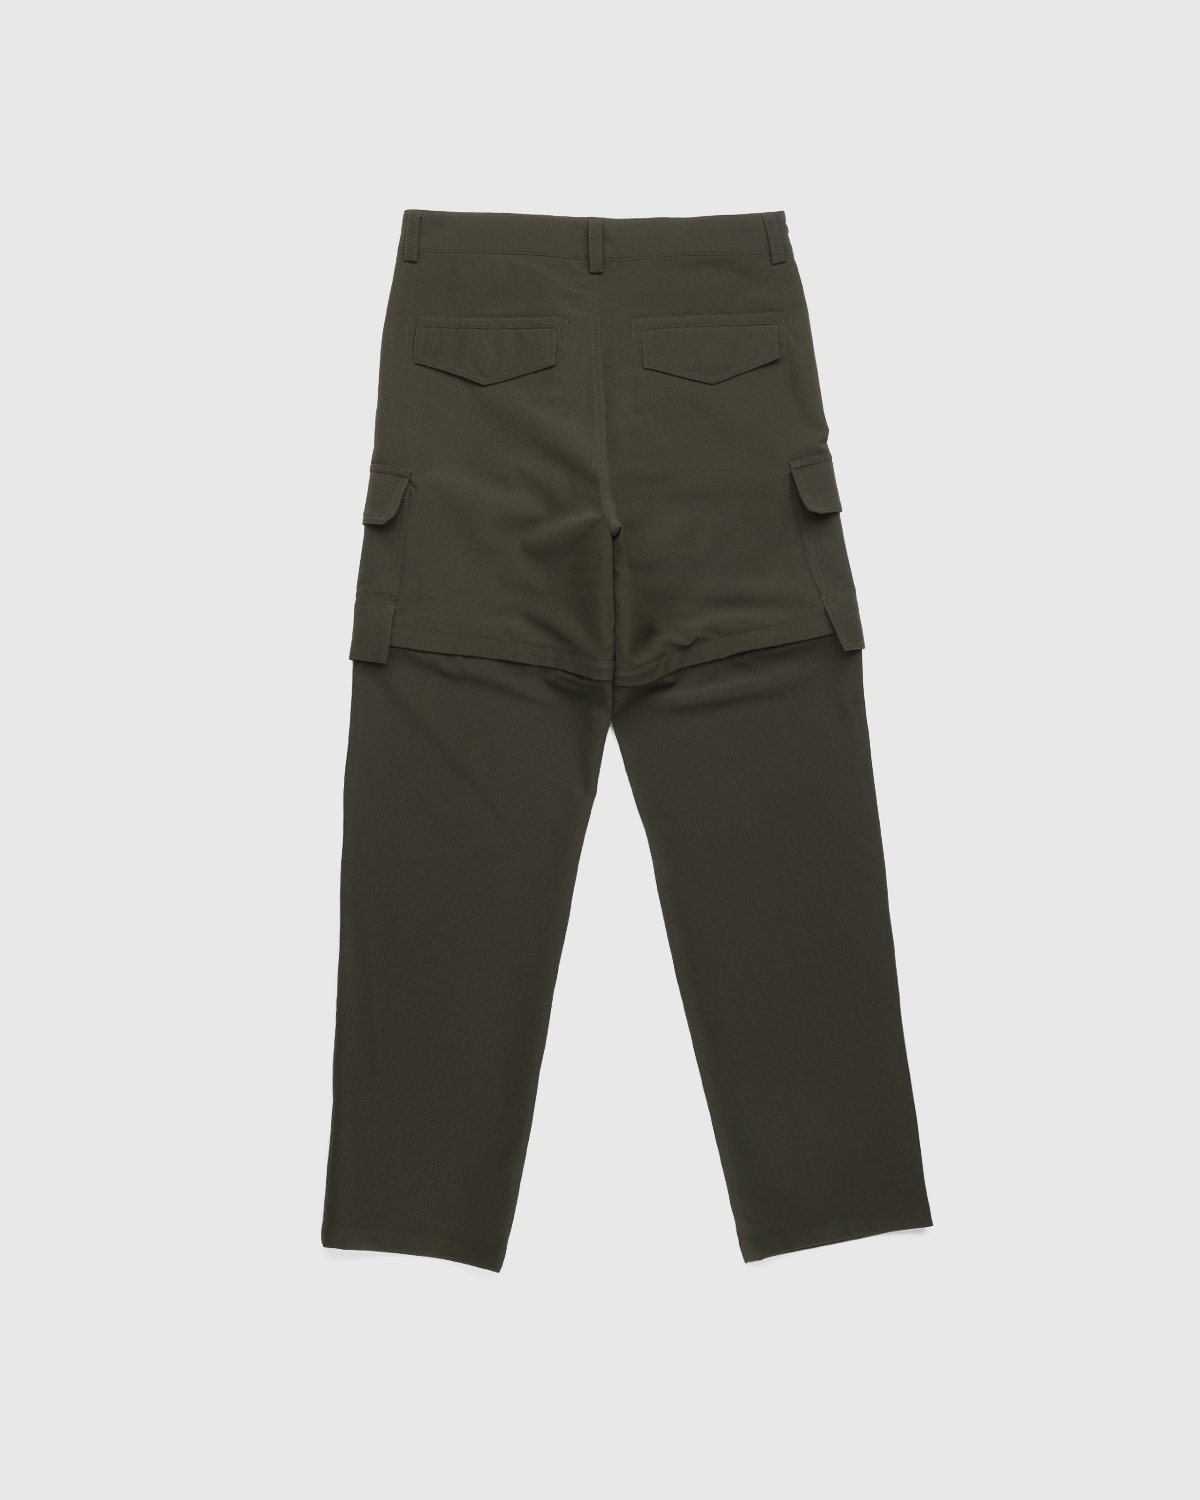 JACQUEMUS – Le Pantalon Peche Dark Khaki - Trousers - Green - Image 2